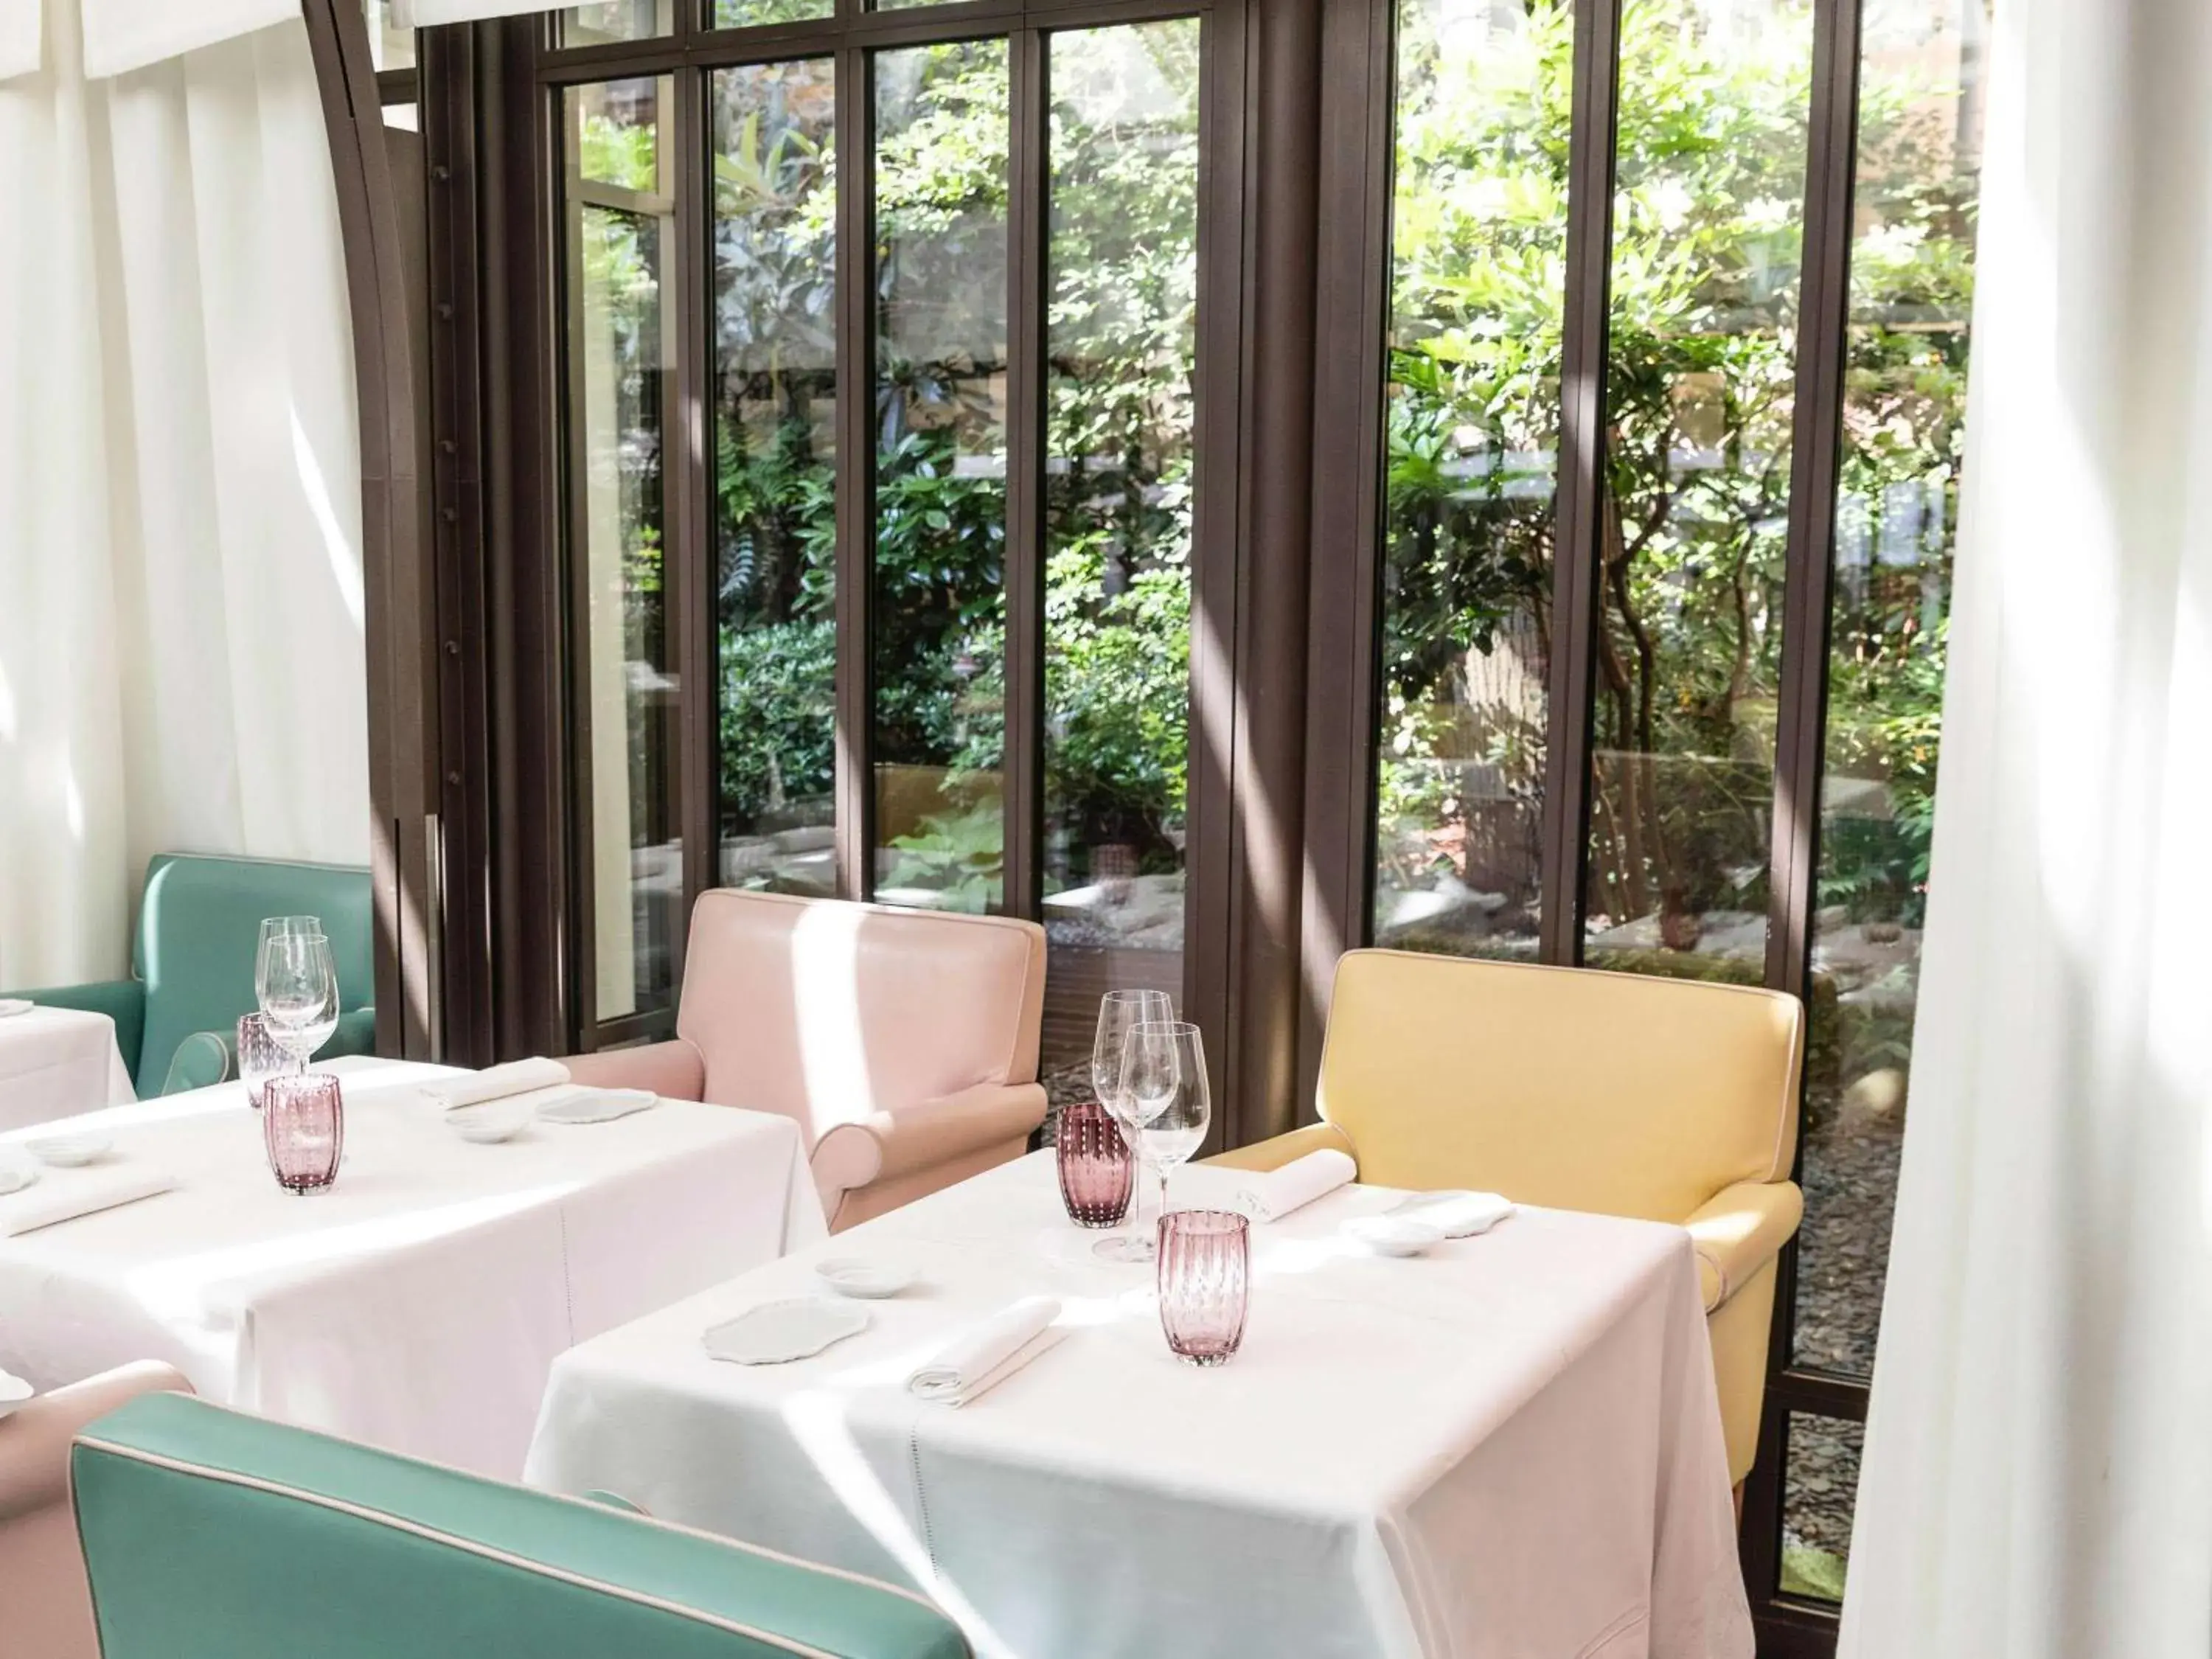 Restaurant/places to eat, Bathroom in Le Royal Monceau Hotel Raffles Paris